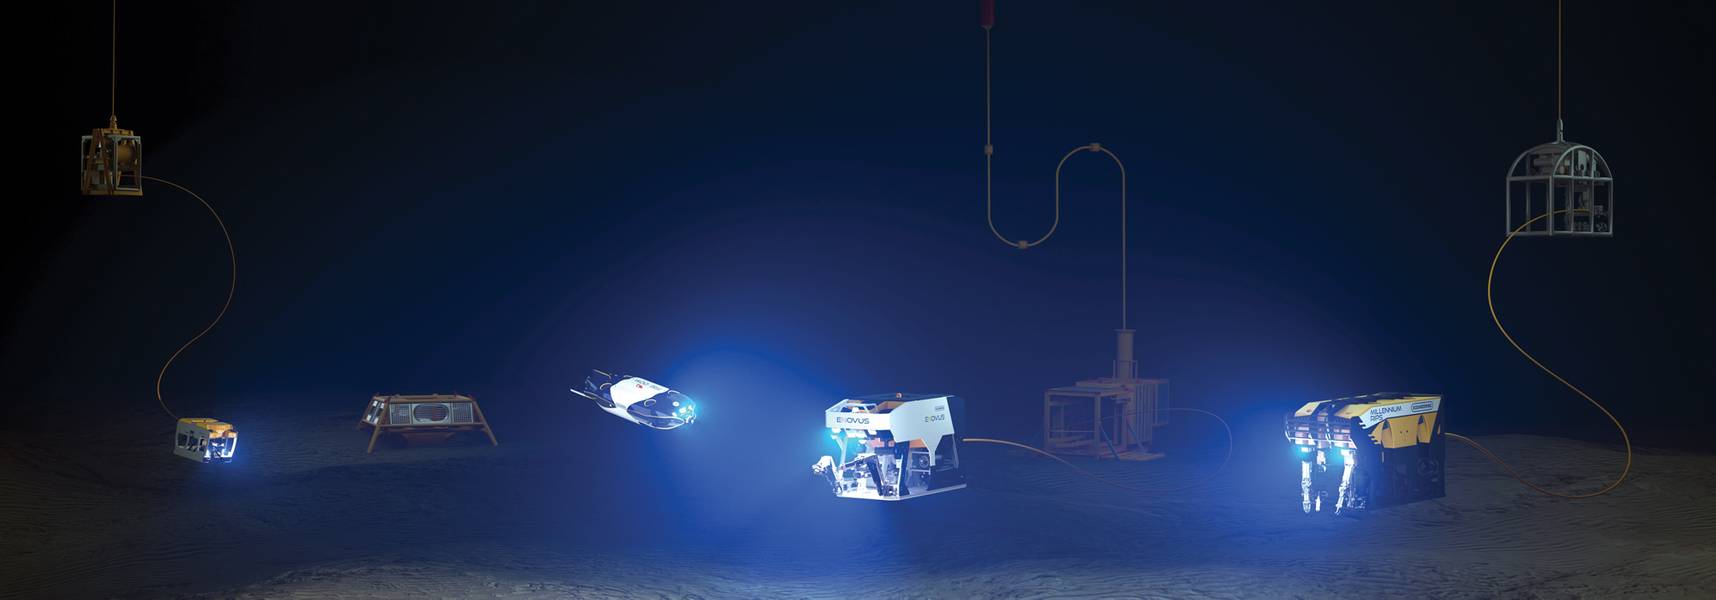 Η σειρά ROV της Oceaneering με τα οχήματα επόμενης γενιάς που περιλαμβάνουν Freedom και E-ROV. Ευγενική προσφορά της Oceaneering International